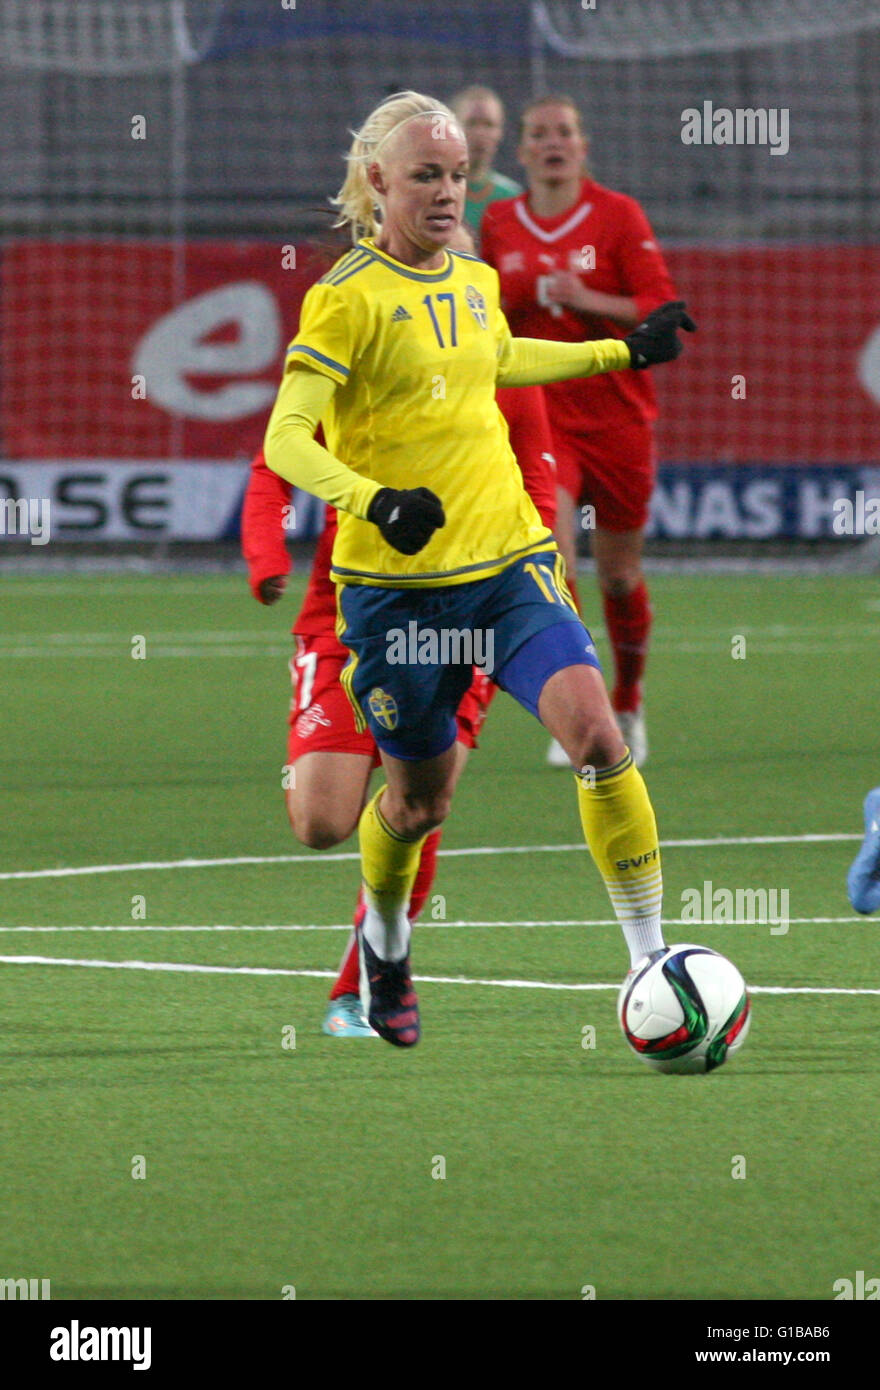 CAROLINE SEGER centrocampista del Equipo Nacional de Fútbol de Suecia y profesional en el París Saint-Germain Foto de stock